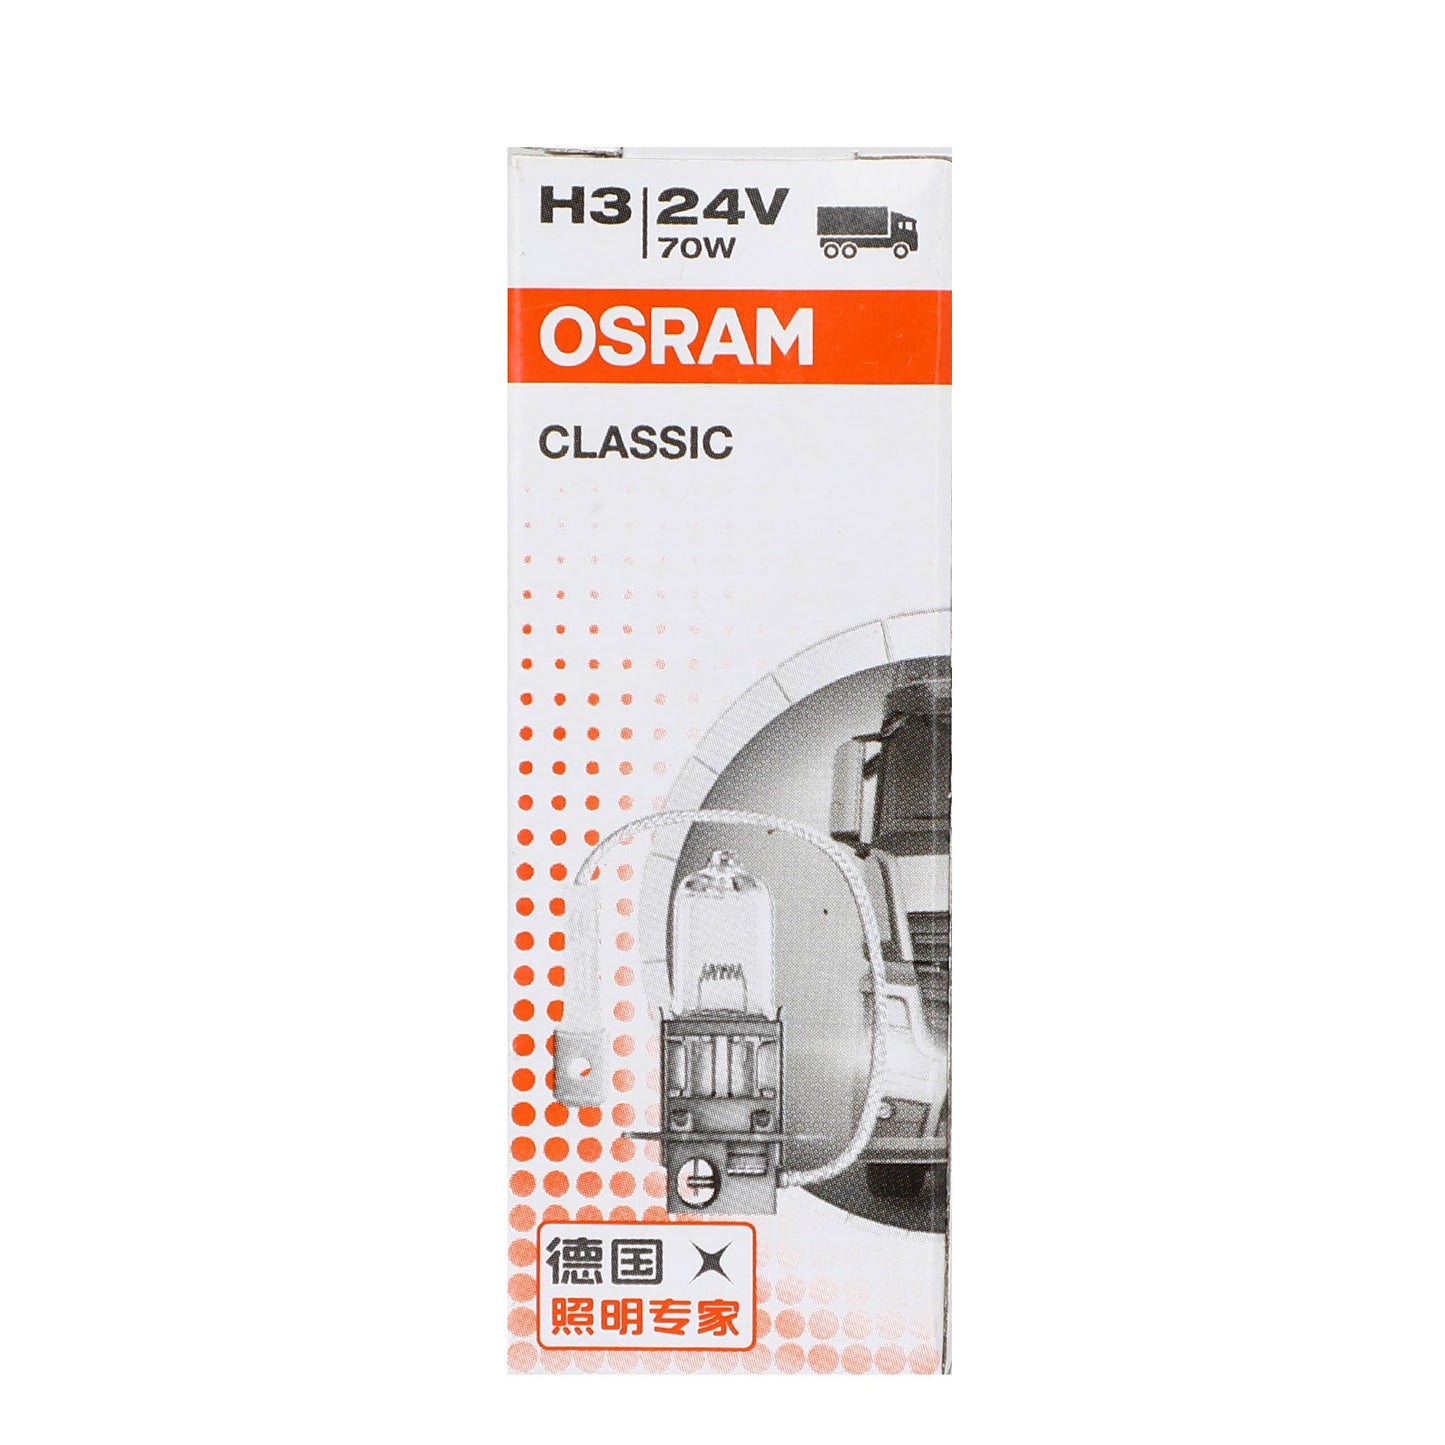 H3 For OSRAM CLASSIC Car Headlight Lamp PK22s 24V70W 64156